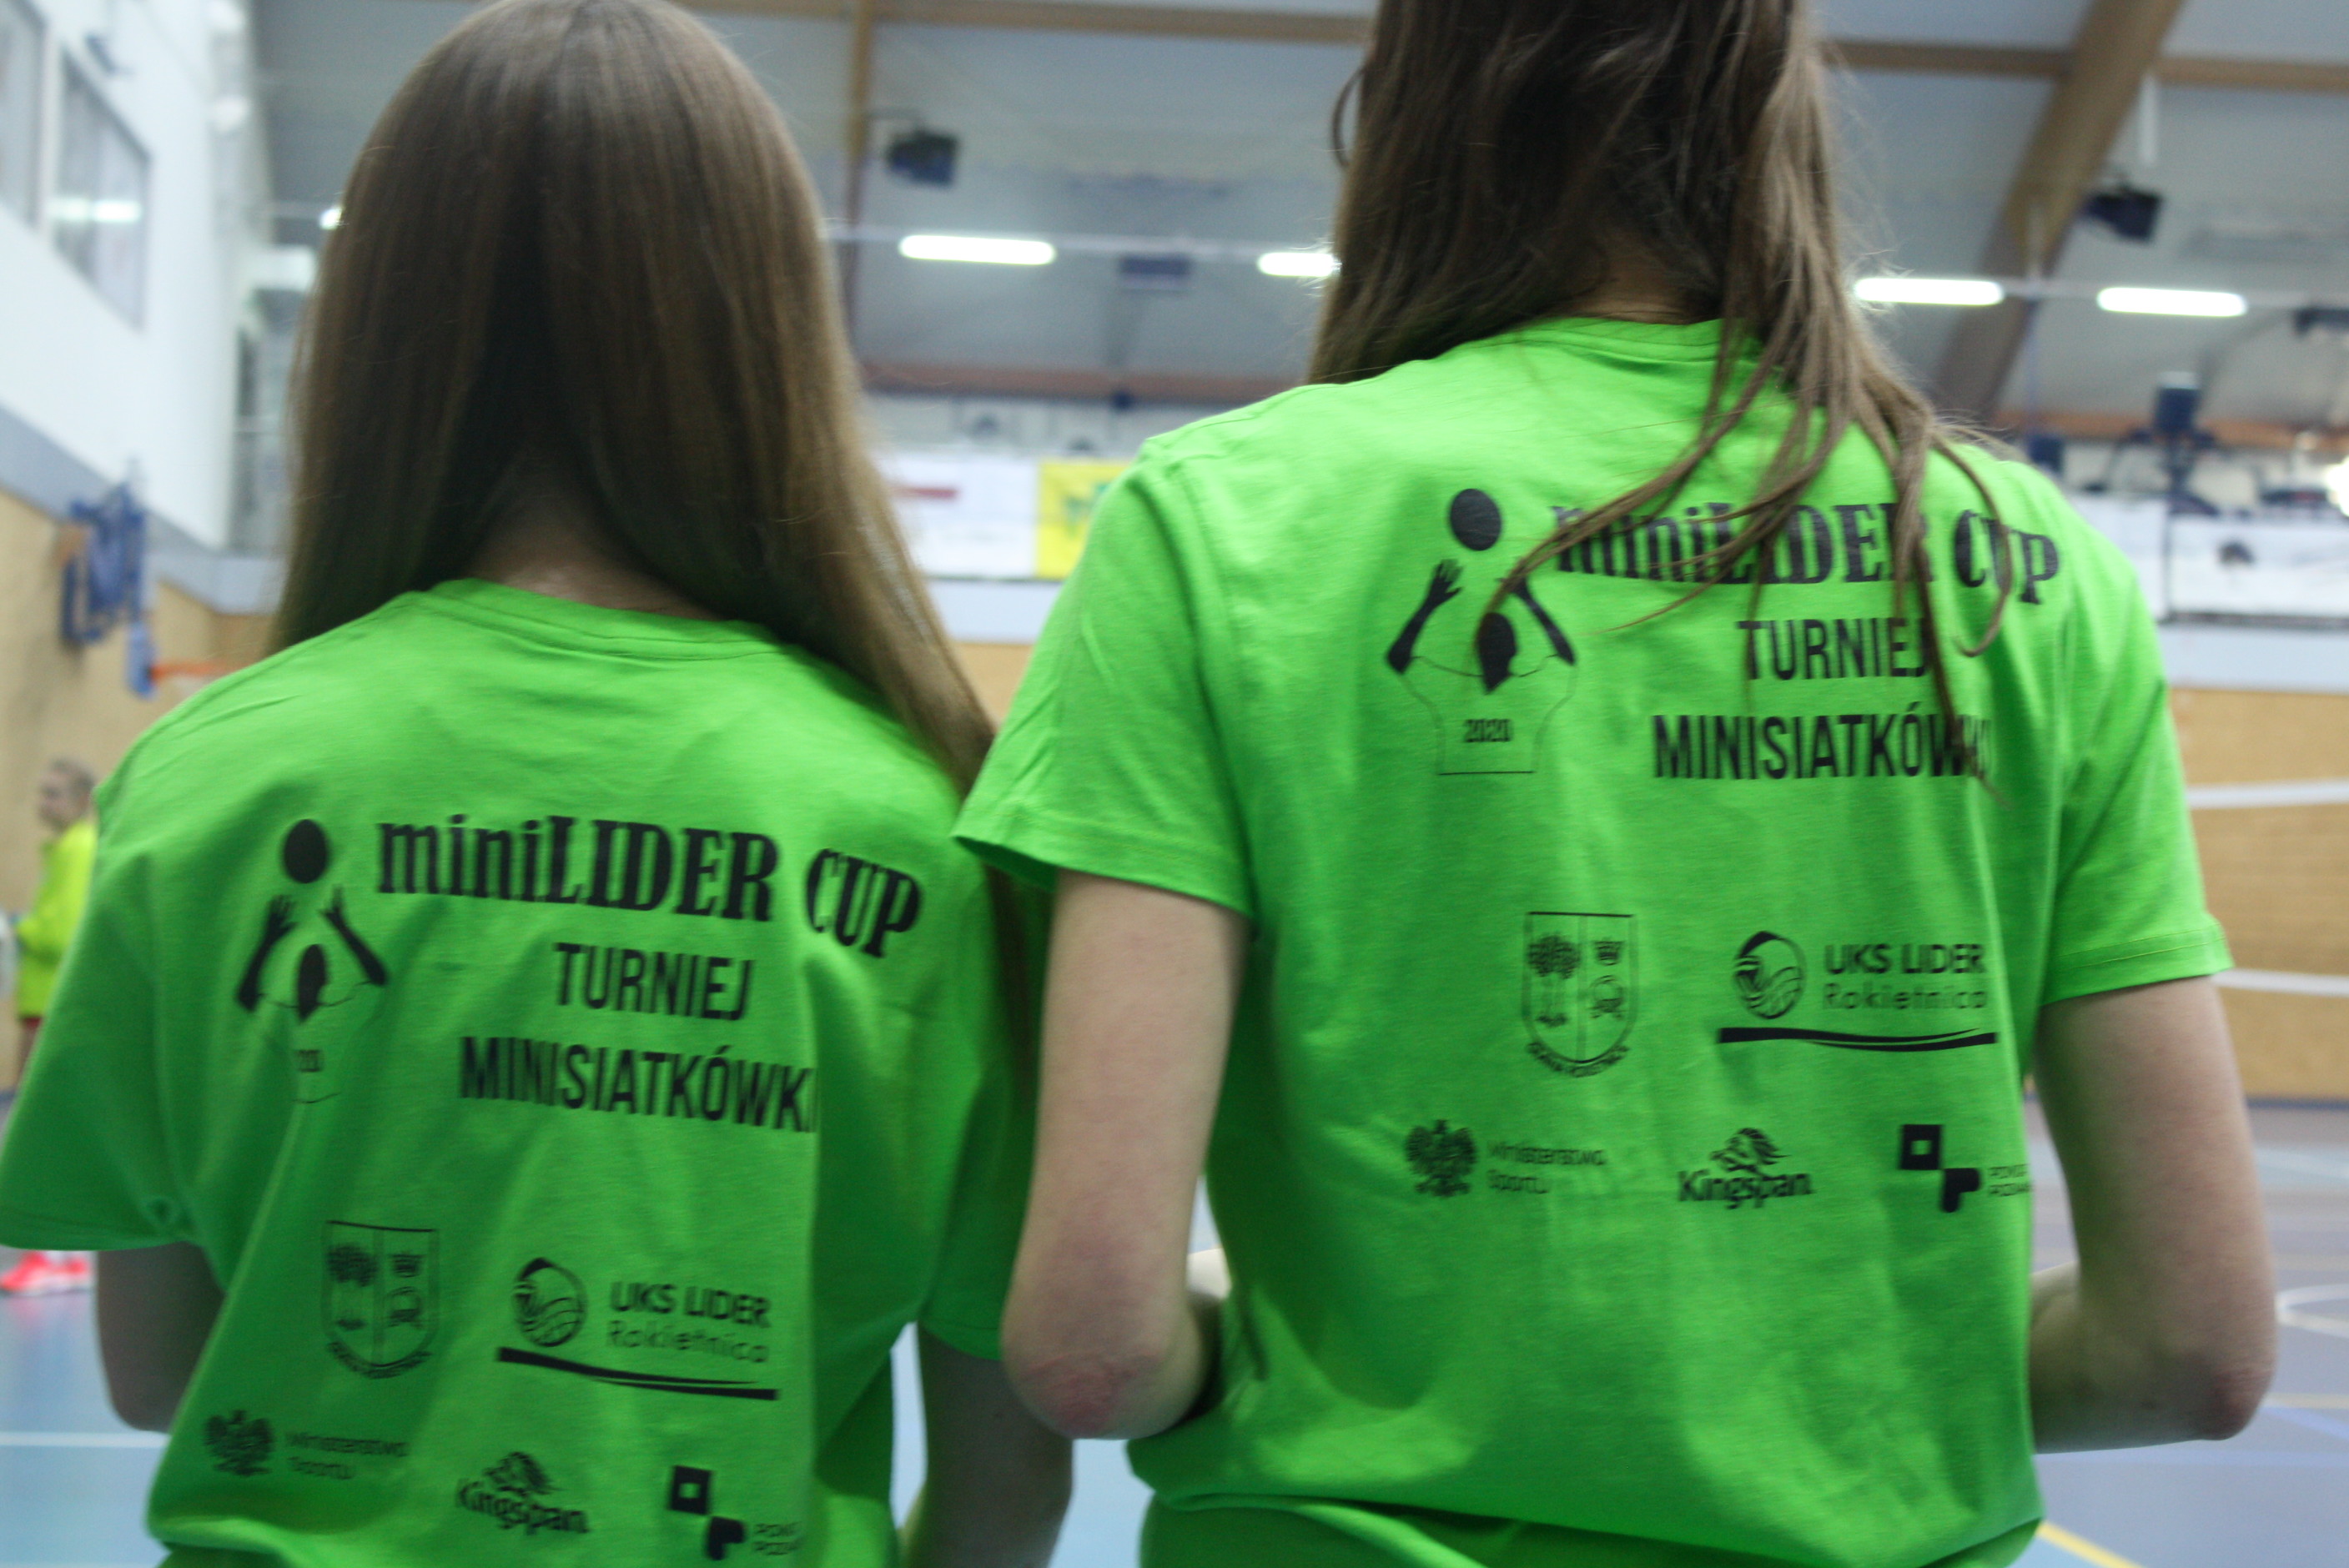 Na zdjęciu znajdują się dwie dziewczynki stojące tyłem do obiektywu. Mają na sobie zielone koszulki z napisem miniLIDER CUP TURNIEJ MINISIATKÓWKI, rysunkiem siatkarza i logotypami organizatorów i sponsorów: Gmina Rokietnica, UKS Lider, Ministerstwo Sportu, Kingspan, Powiat Poznański.